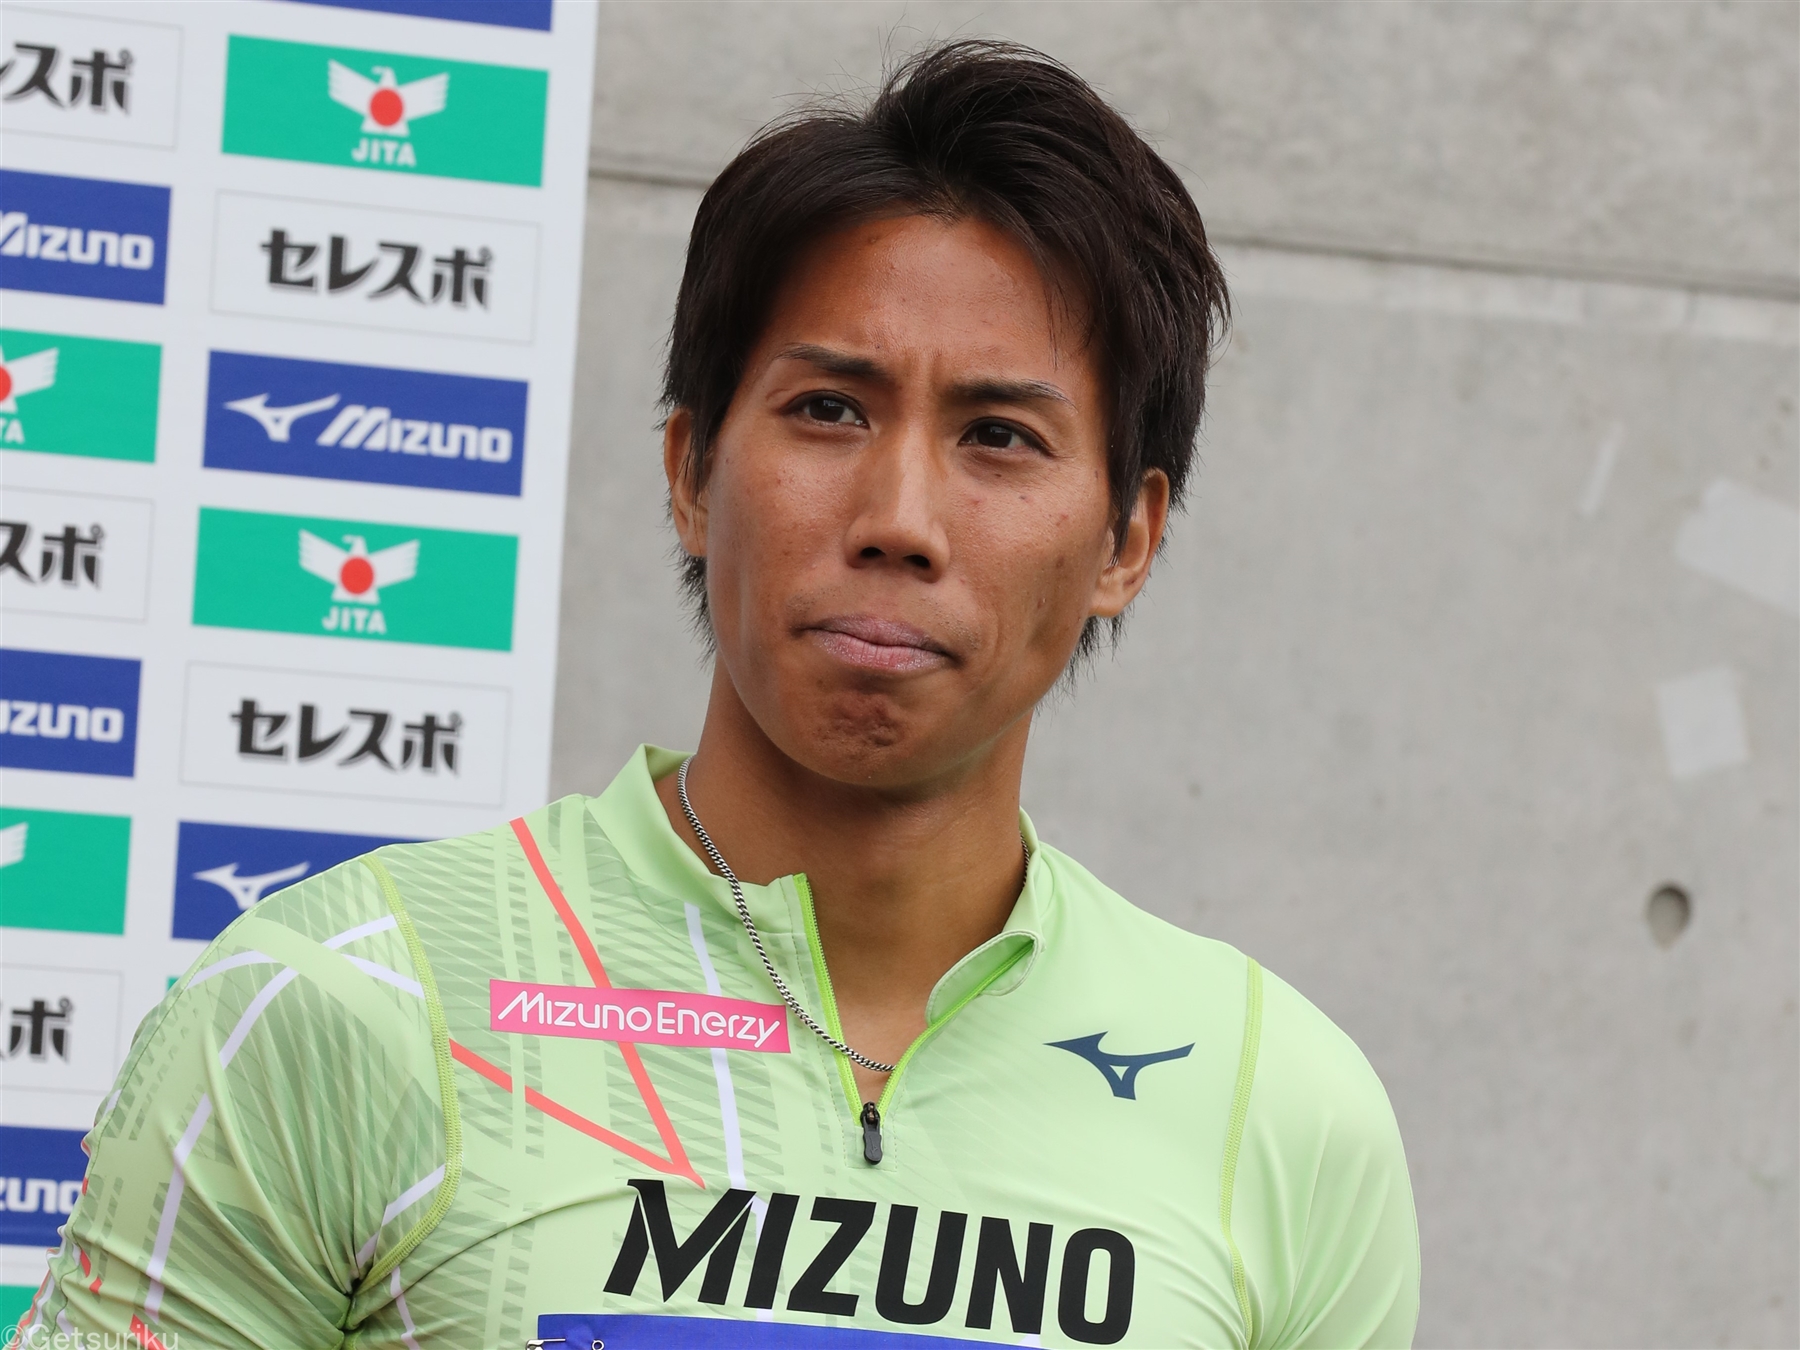 リオ五輪代表の松下祐樹が9月25日の全日本実業団で現役引退へ「競技生活に後悔は一切ありません」